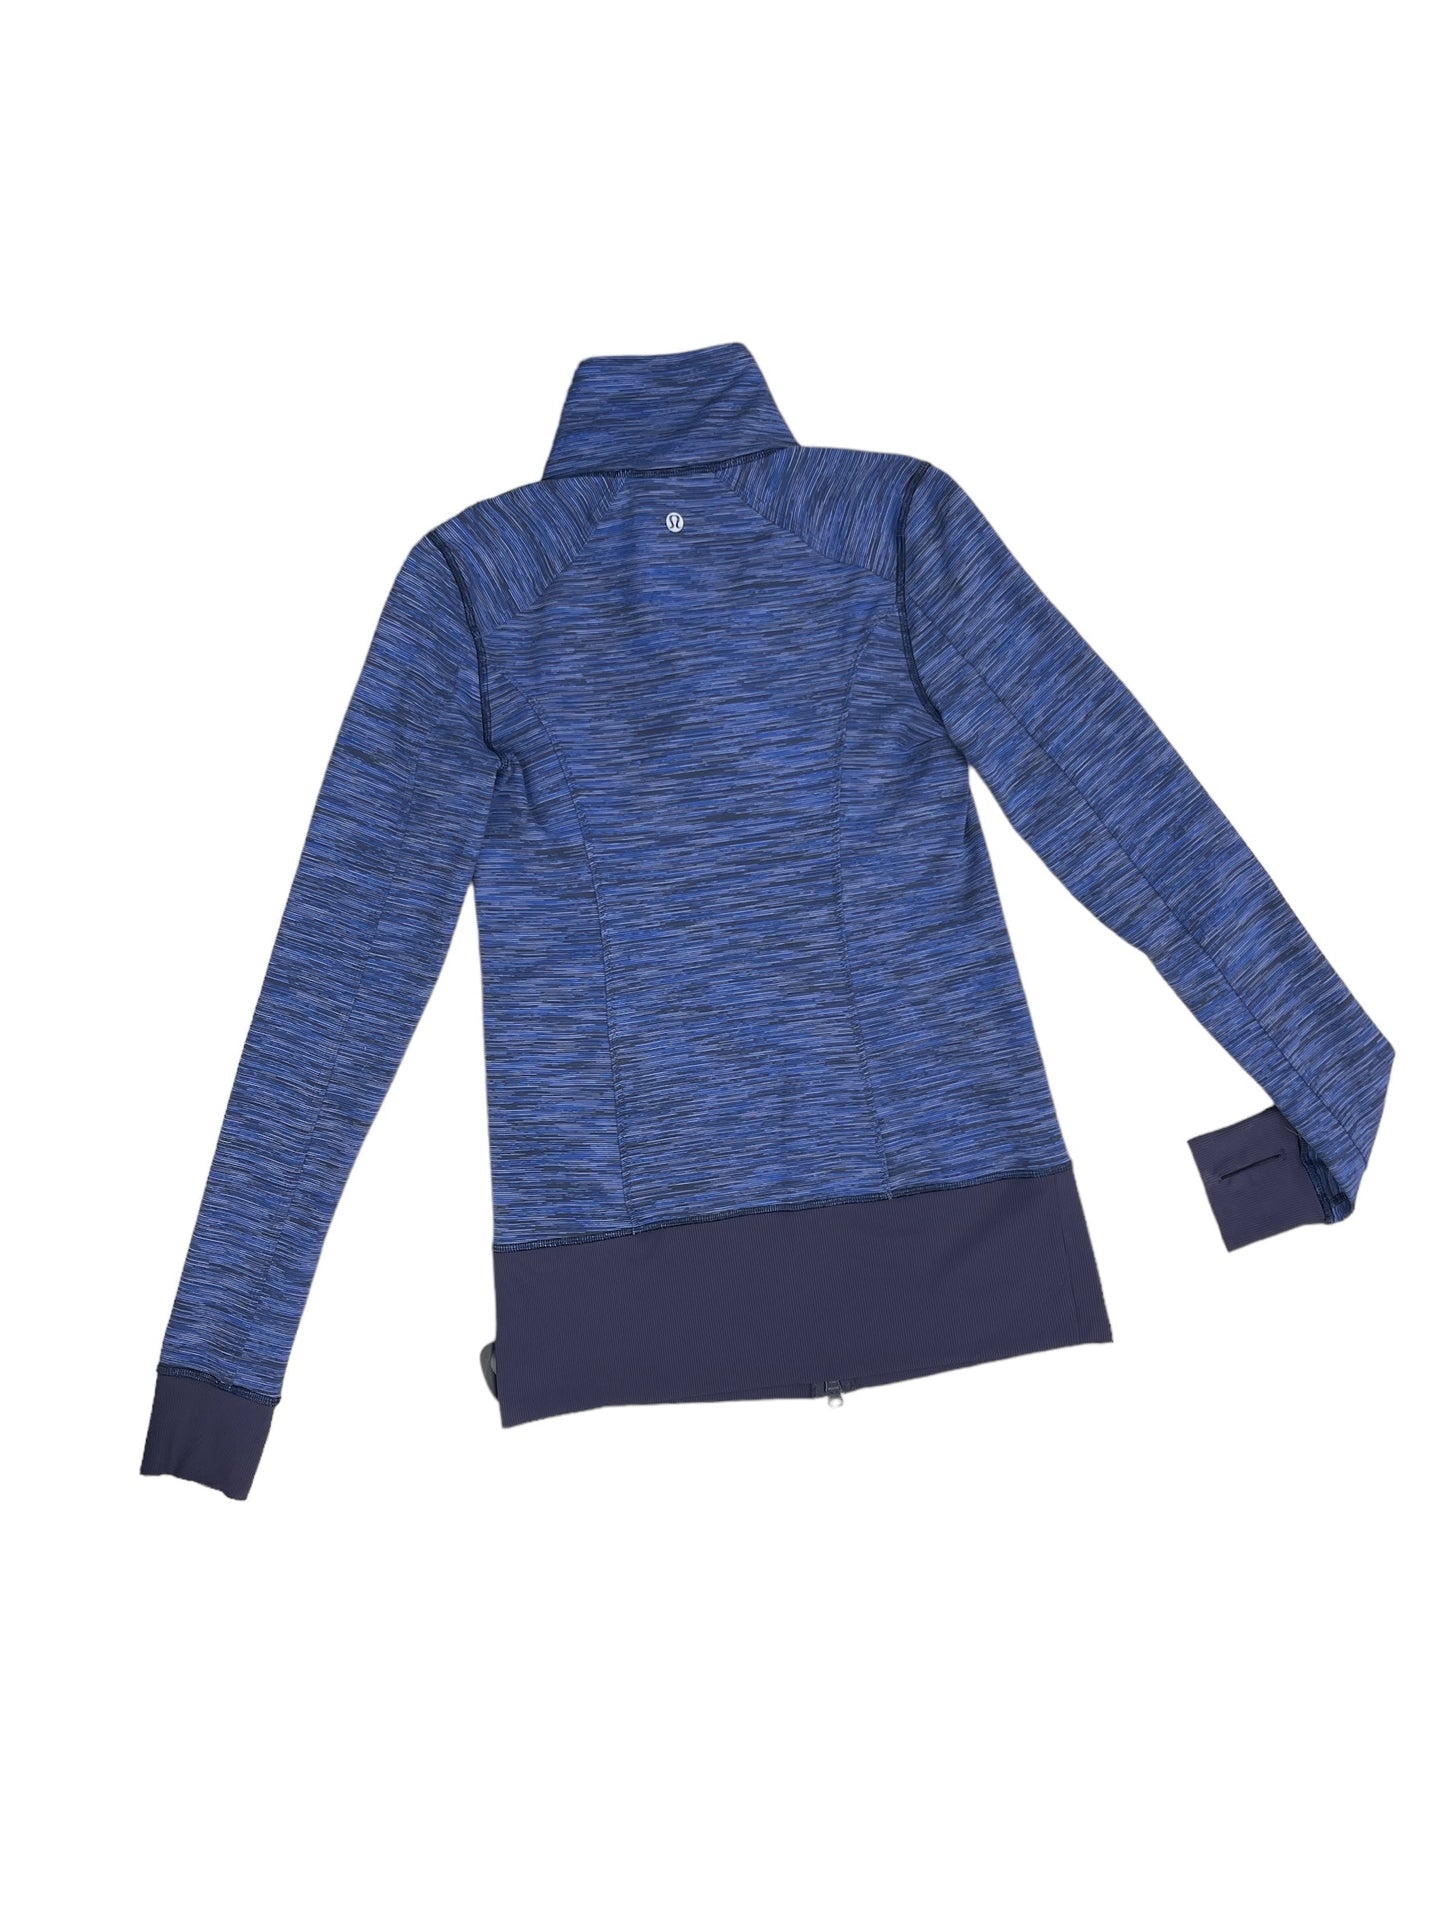 Blue Athletic Jacket Lululemon, Size S